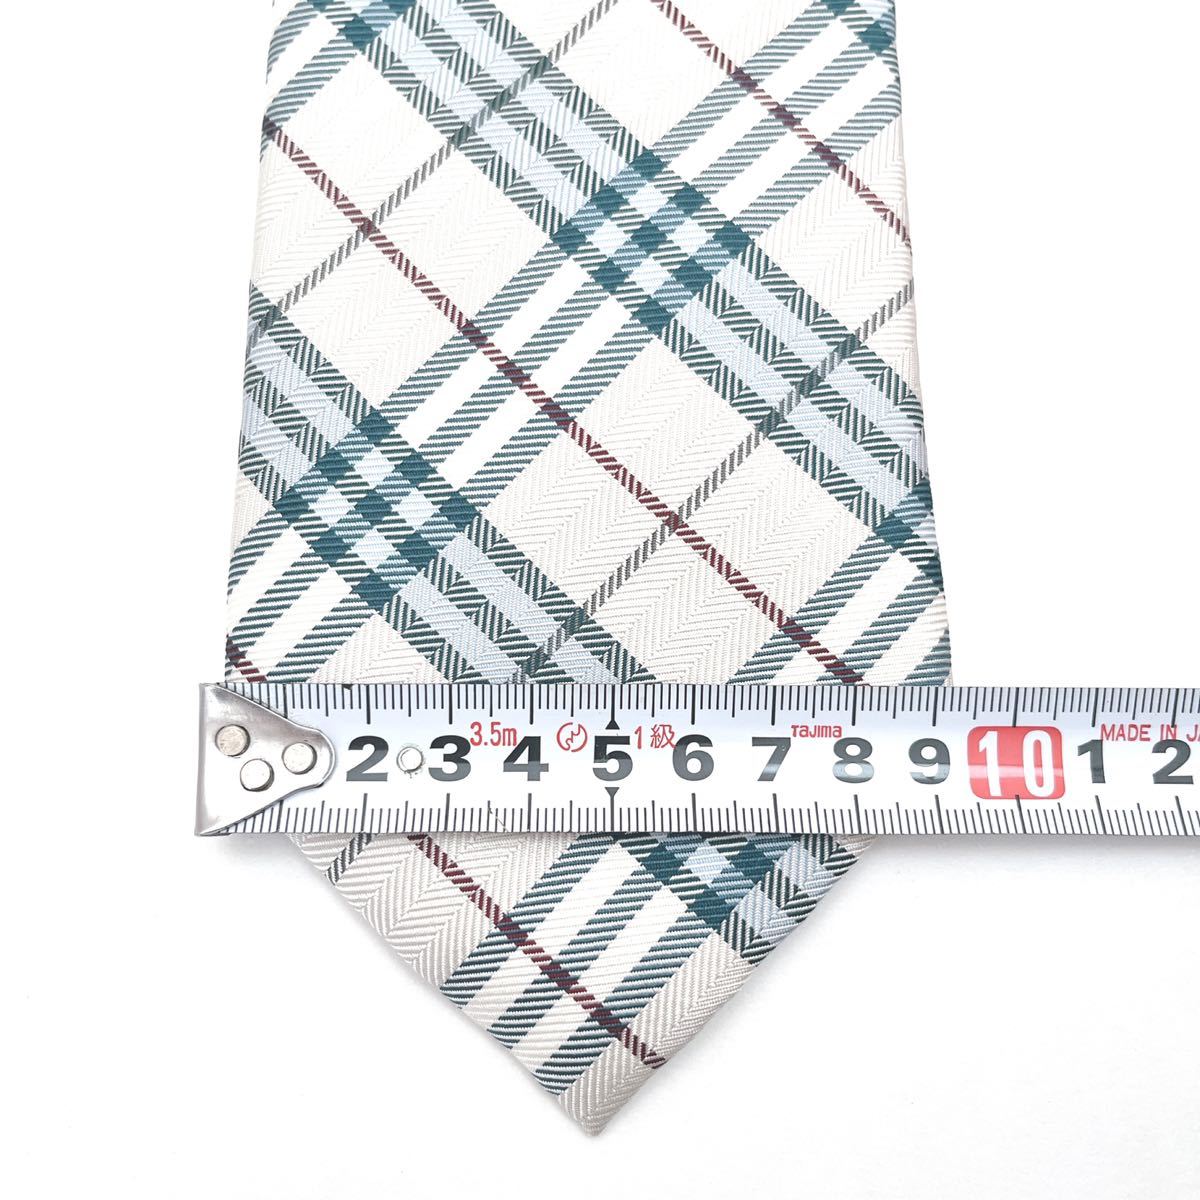 BURBERRY Burberry превосходный товар галстук высший класс шелк noba проверка вышивка 